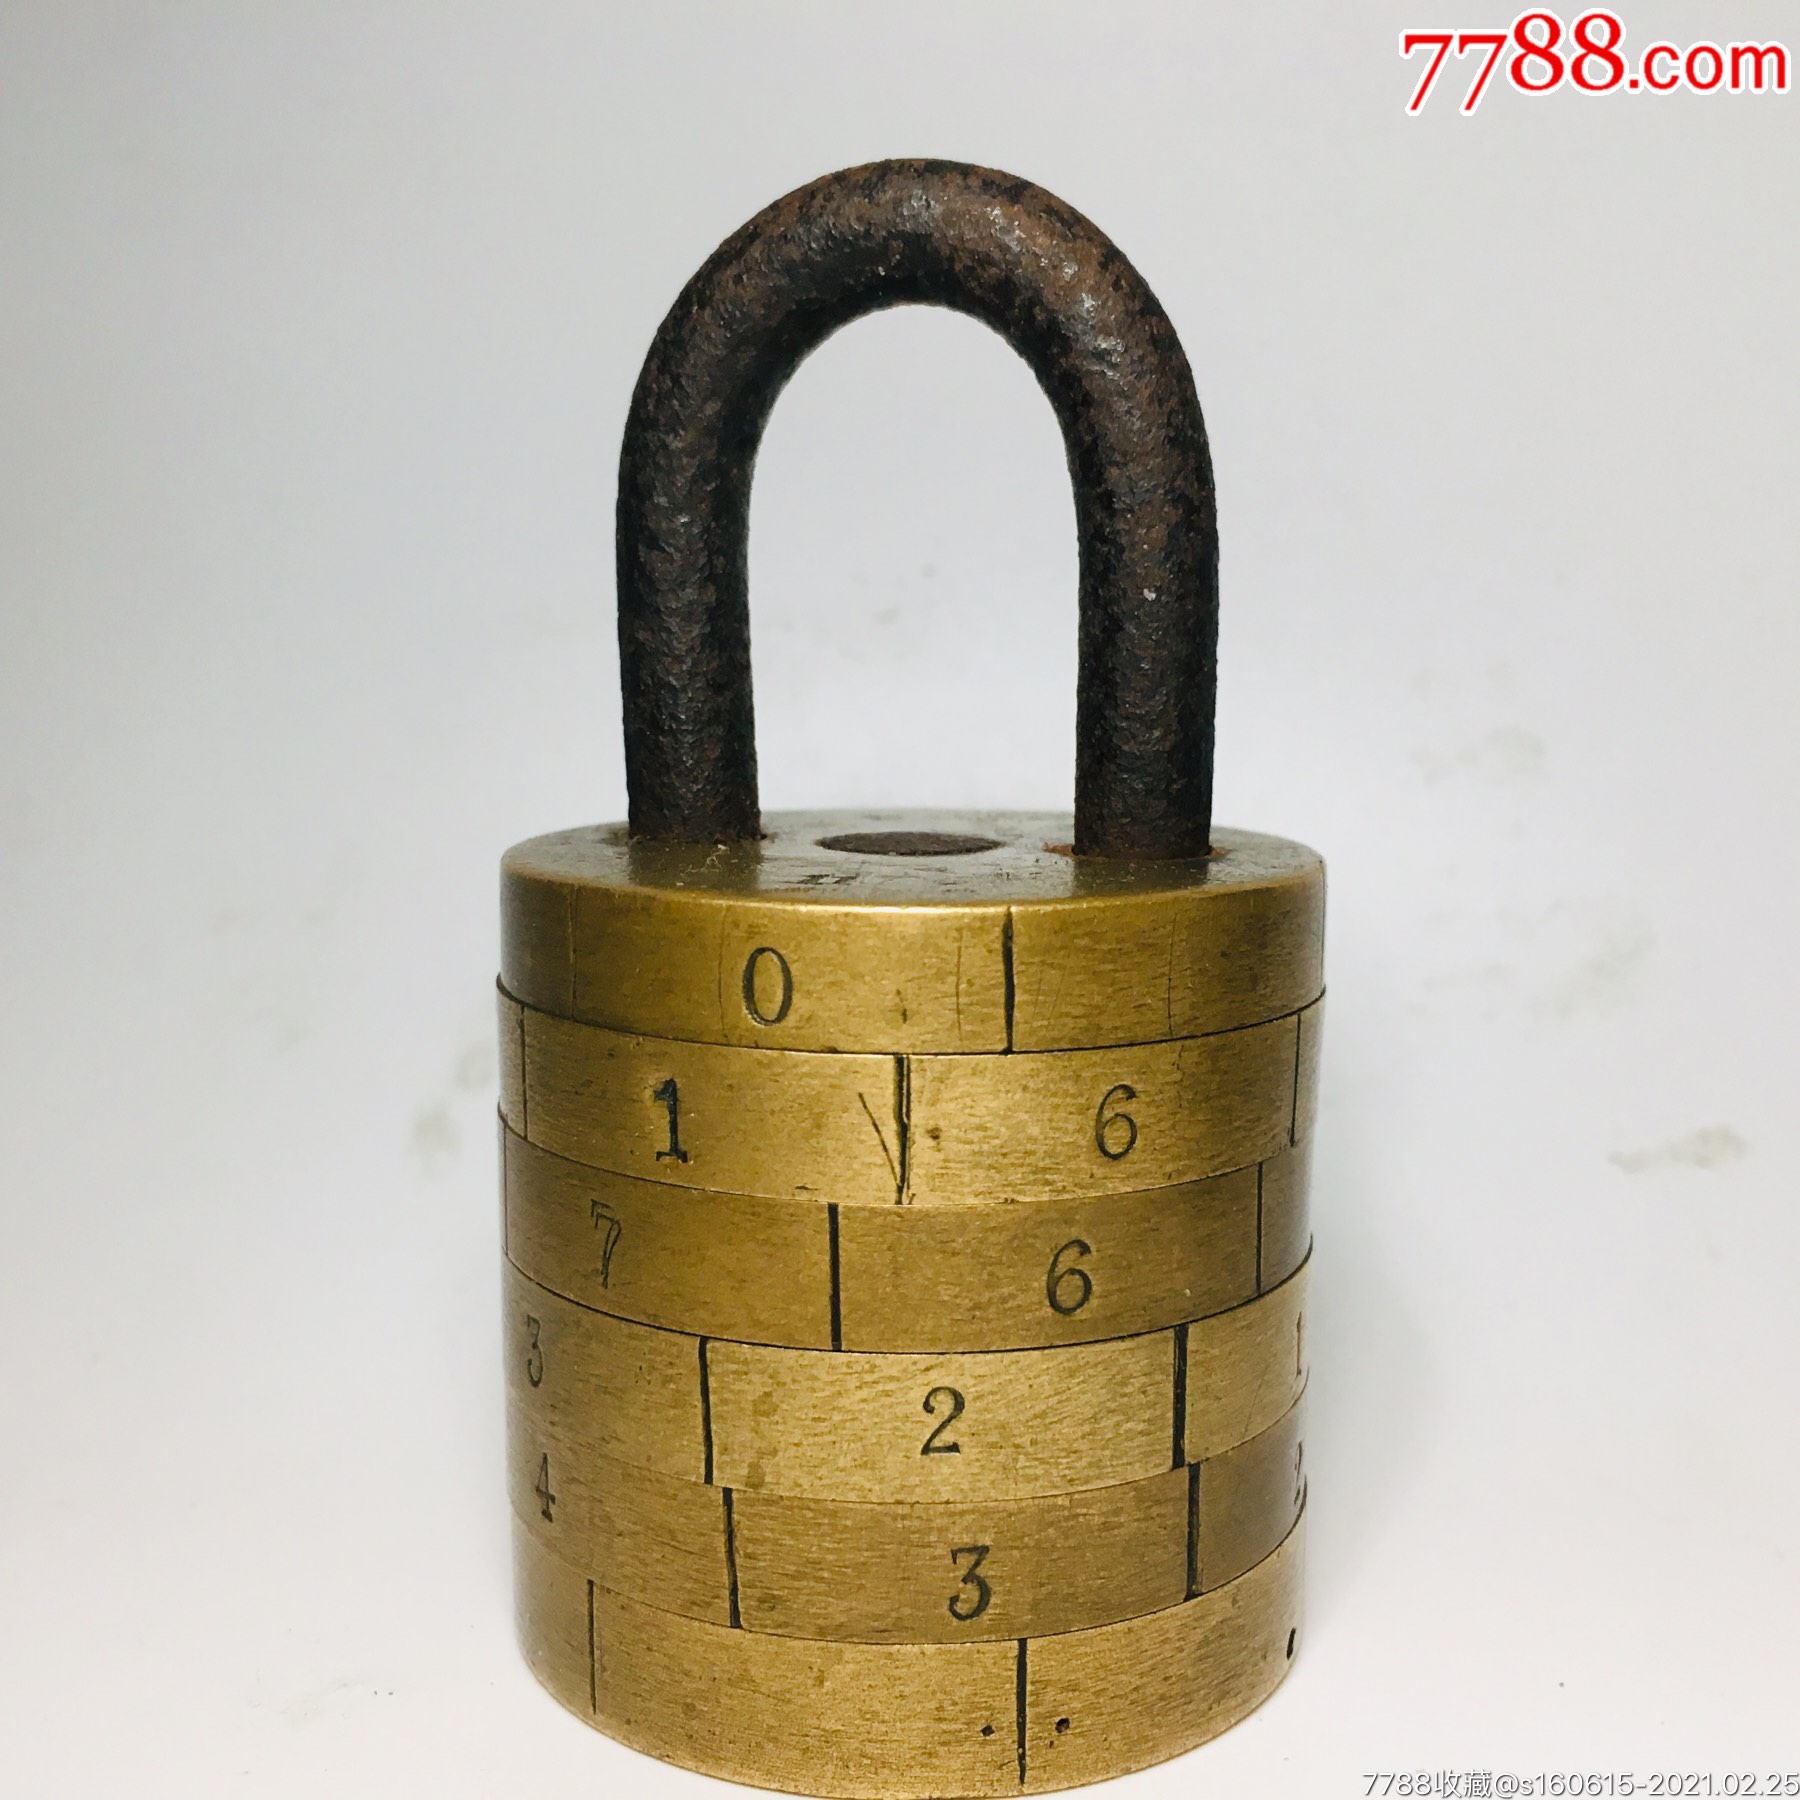 超大清代民国时期数字老密码锁老铜锁机关锁老钥匙古锁收藏